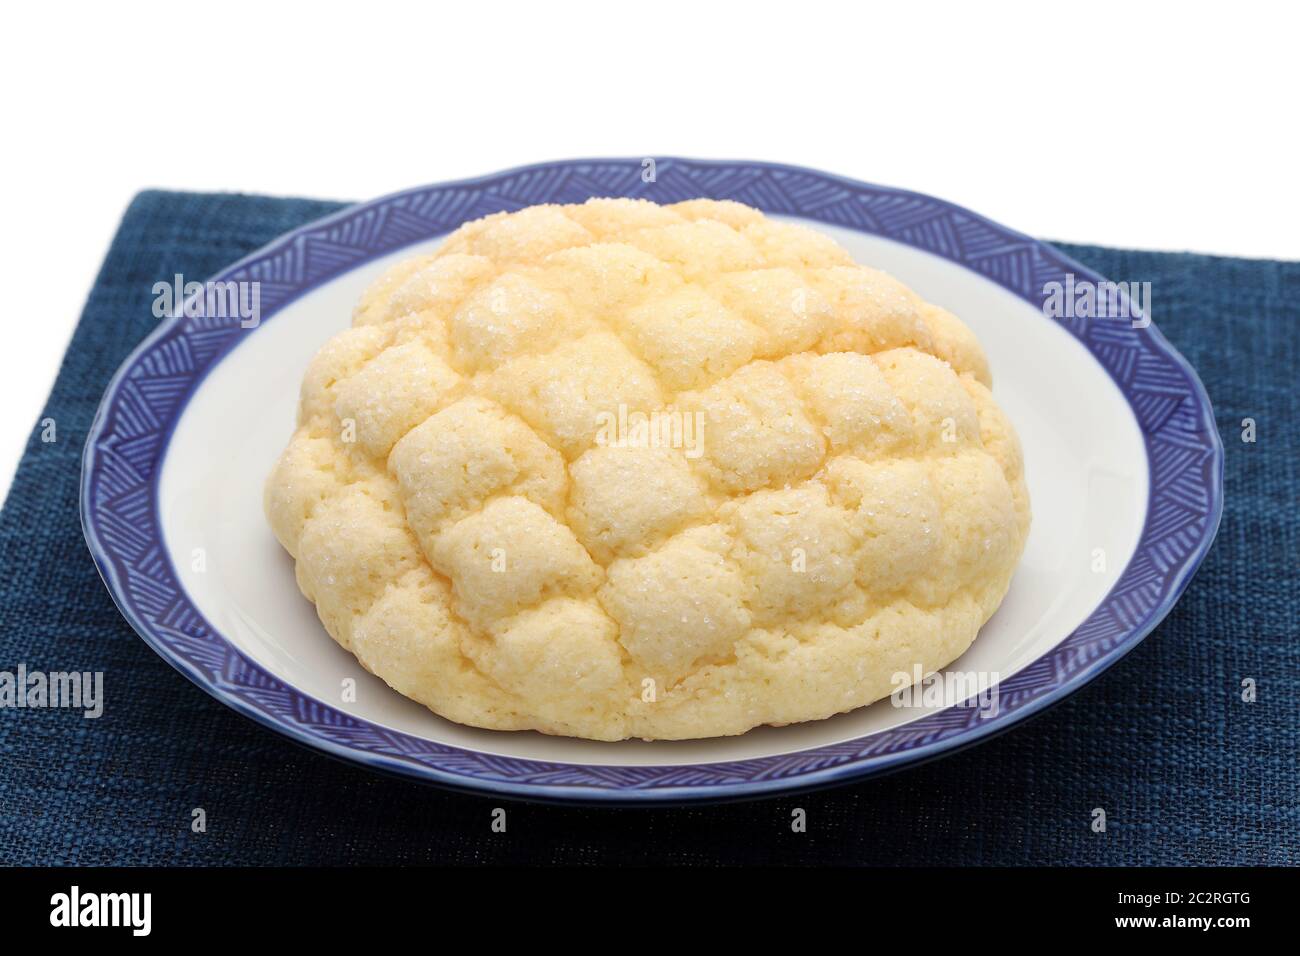 Japanese meronpan bread on dish on table Stock Photo